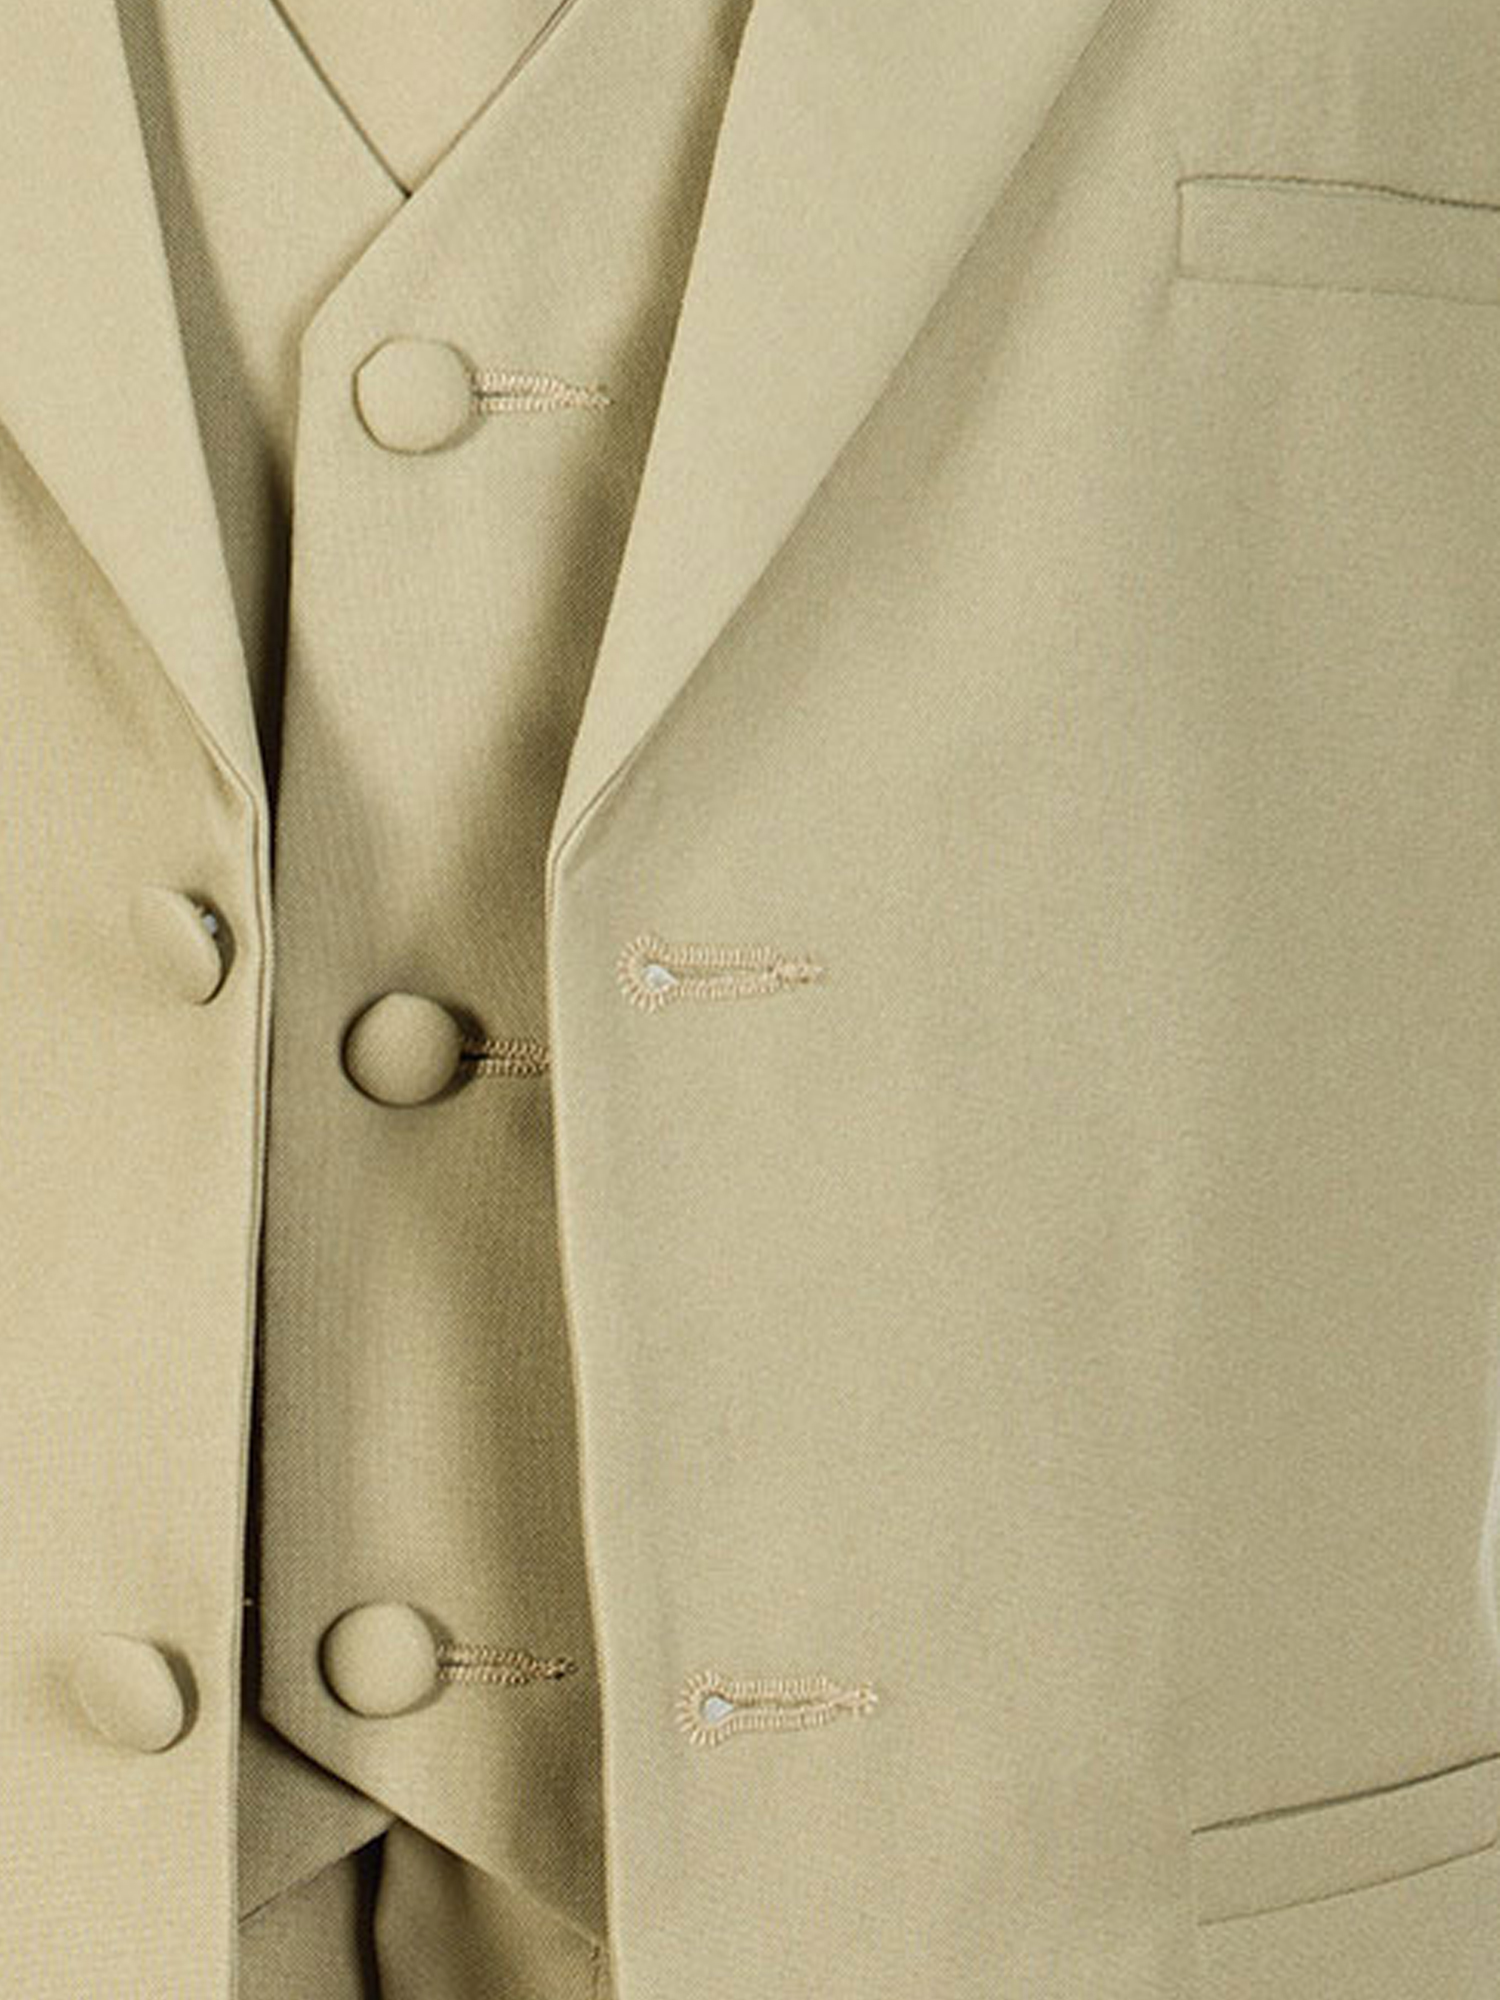 5 Piece Khaki Suit with Shirt Vest and Tie 